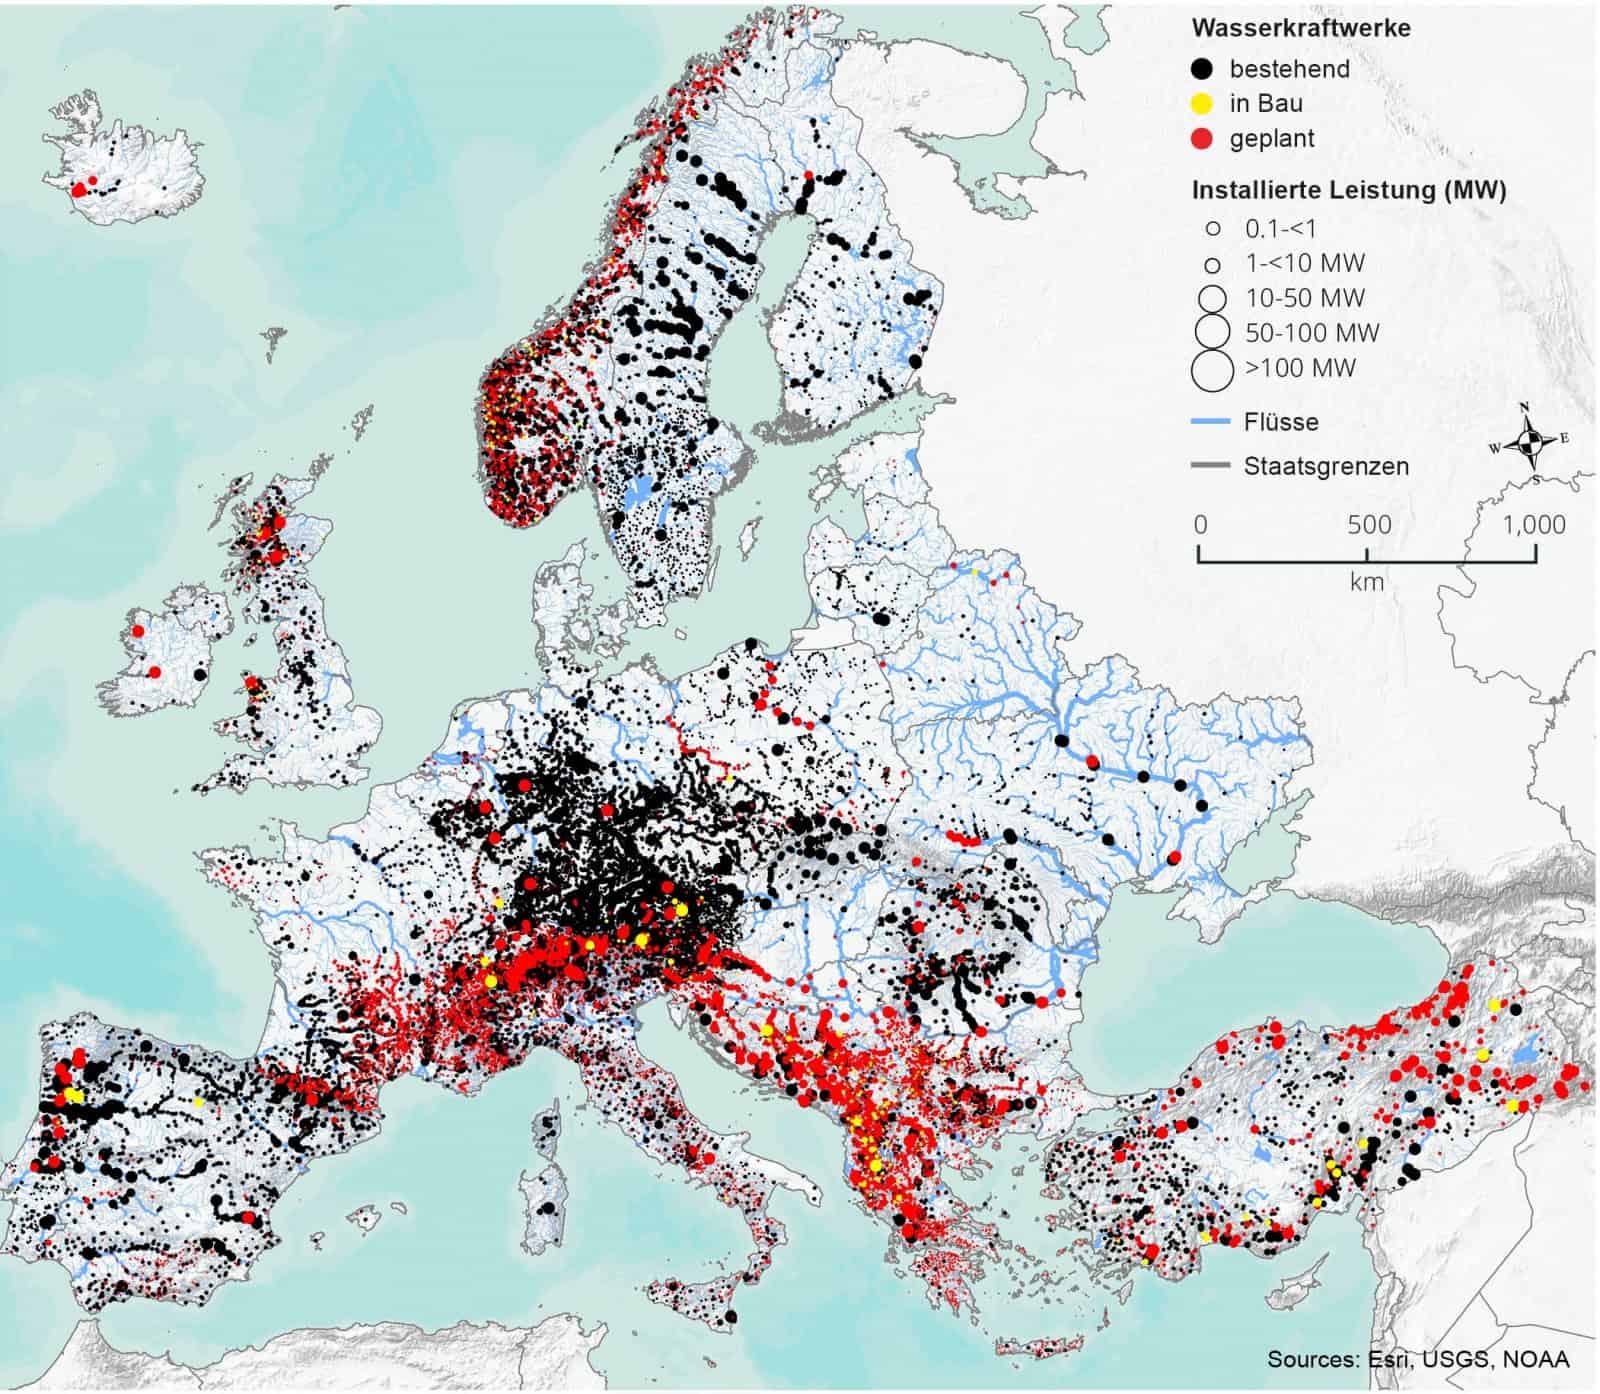 Grafik Wasserkraft in Europa, © by Esri, USGS, NOAA